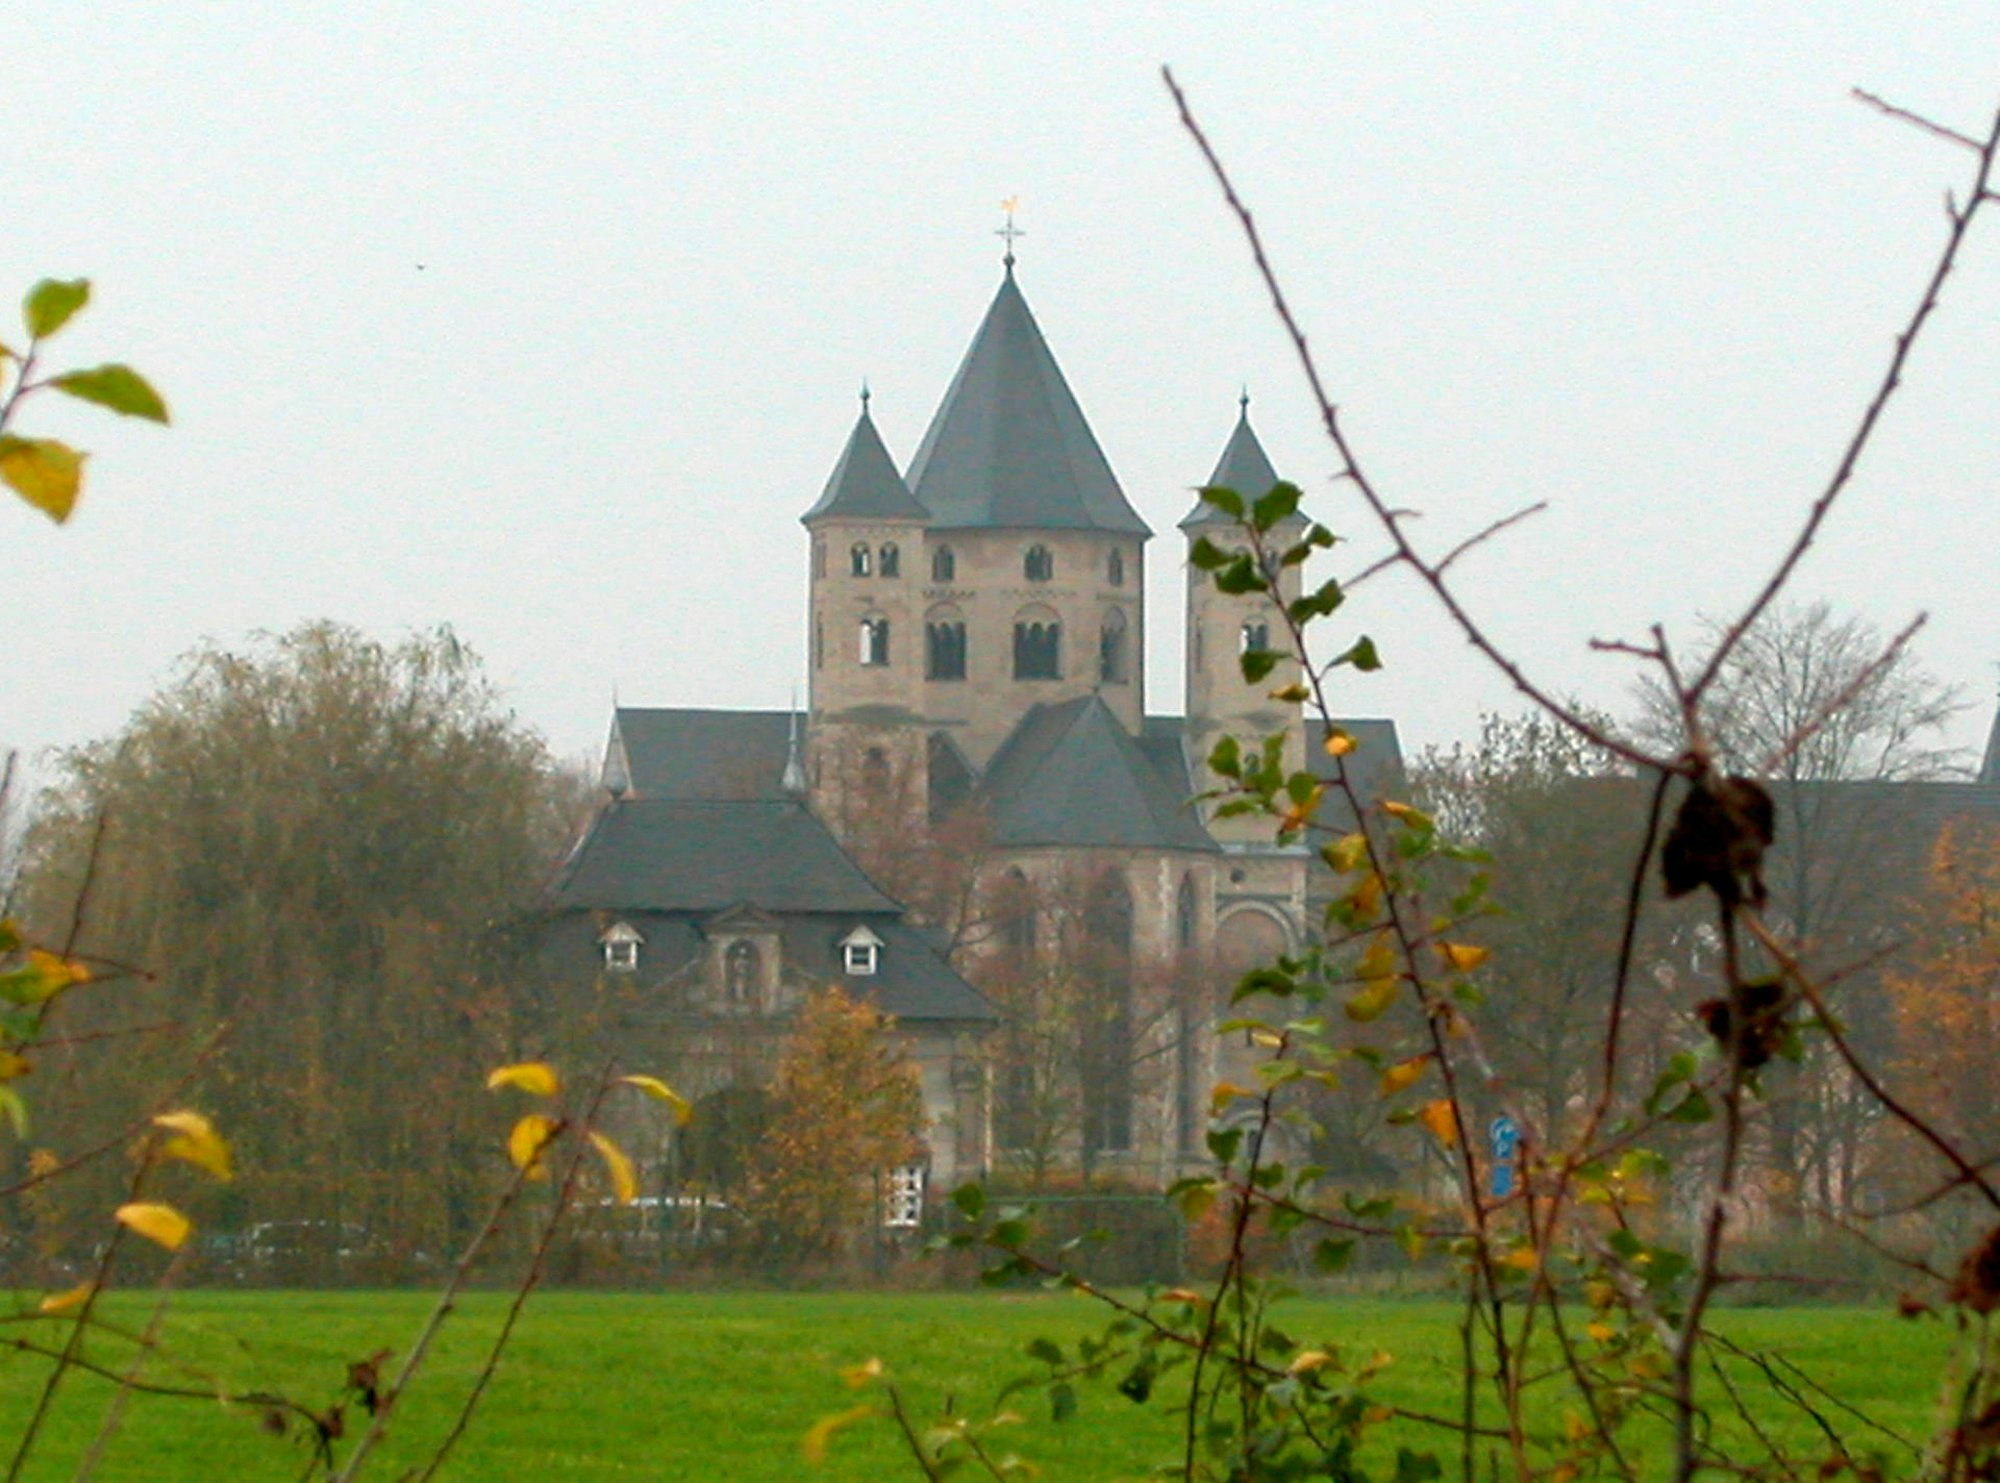 Kloster_Knechtsteden_Wiki public domain velopilger1